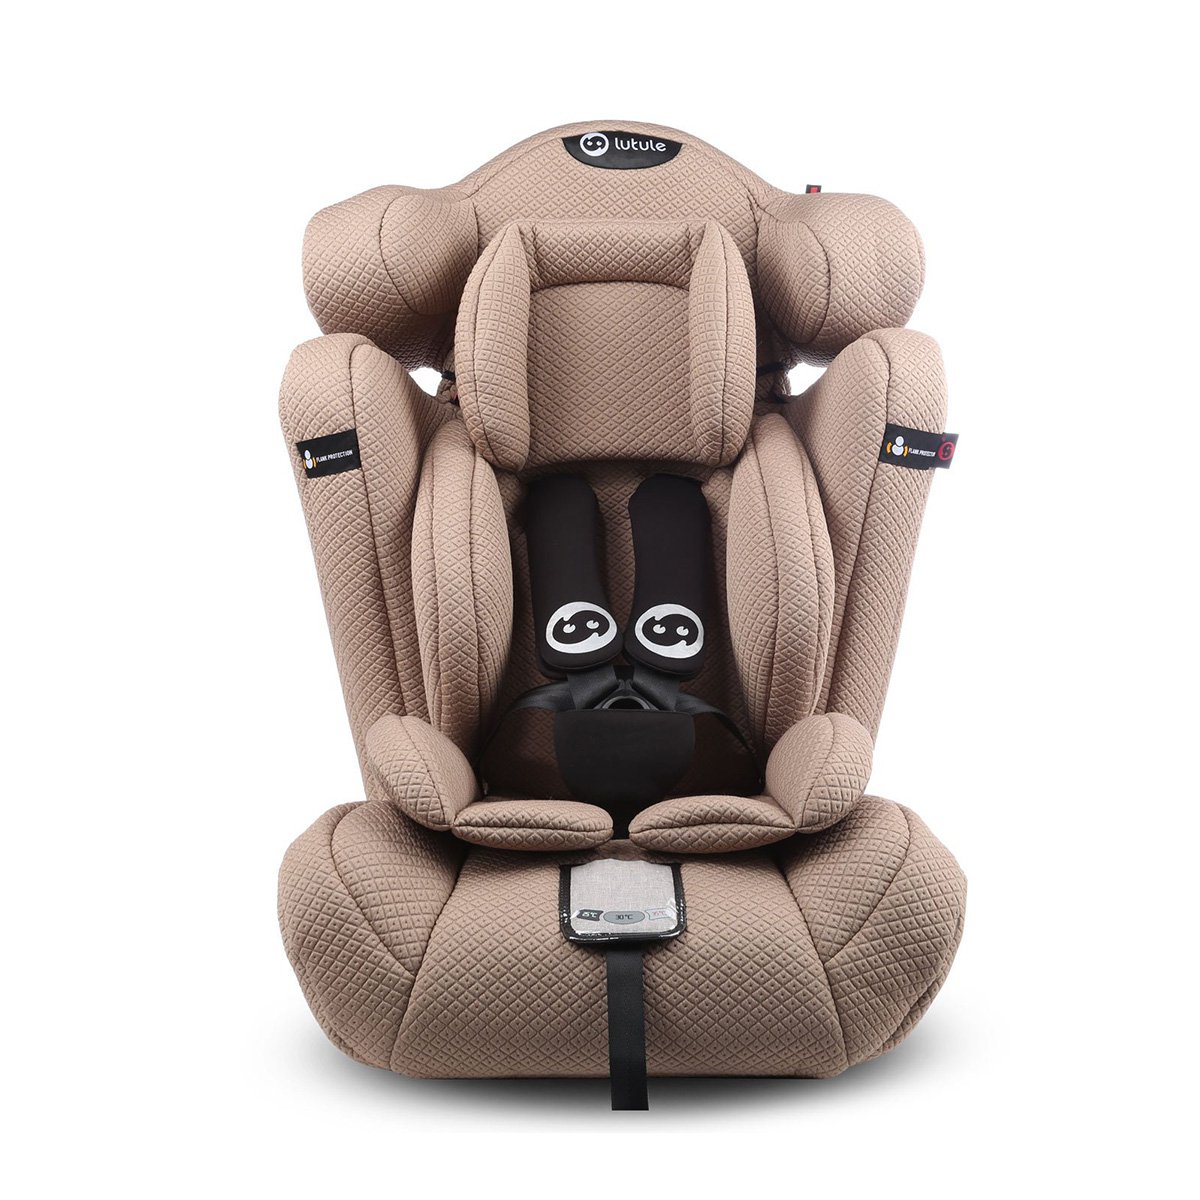 路途乐 熊c 汽车安全座椅 宝宝儿童安全座椅 9个月-12岁